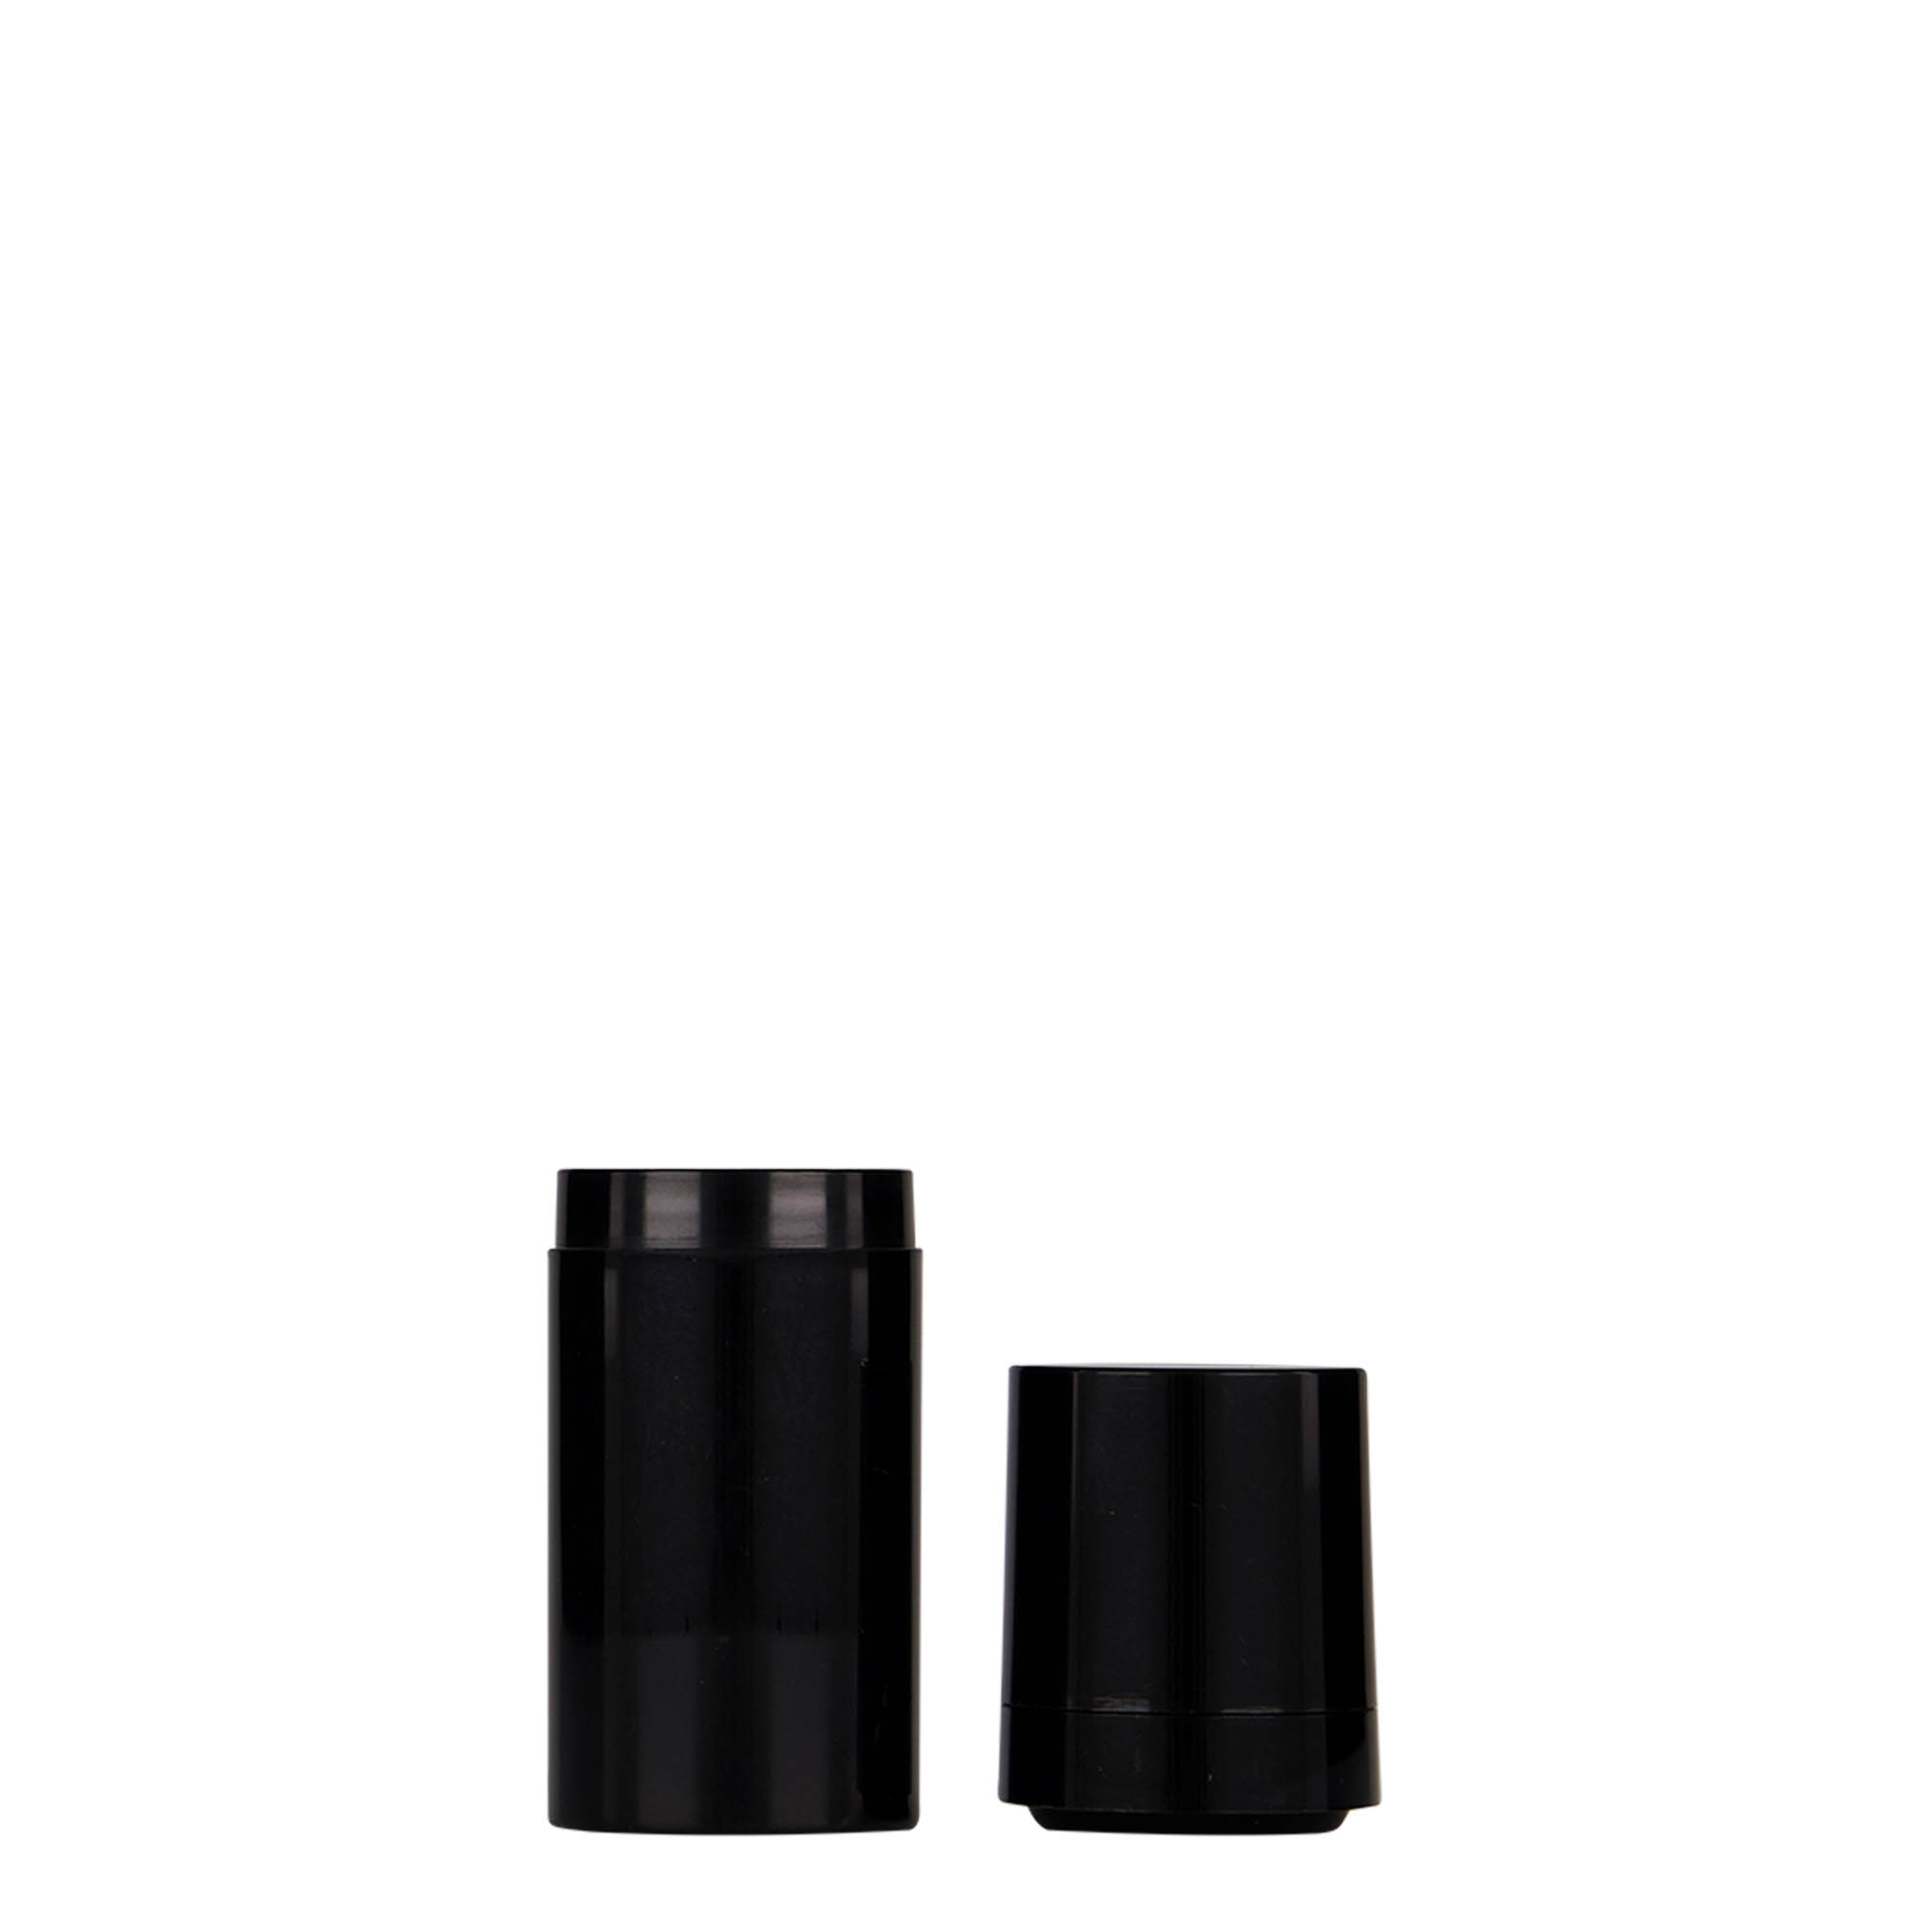 Bezvzduchový dávkovač 15 ml 'Micro', plast PP, černý